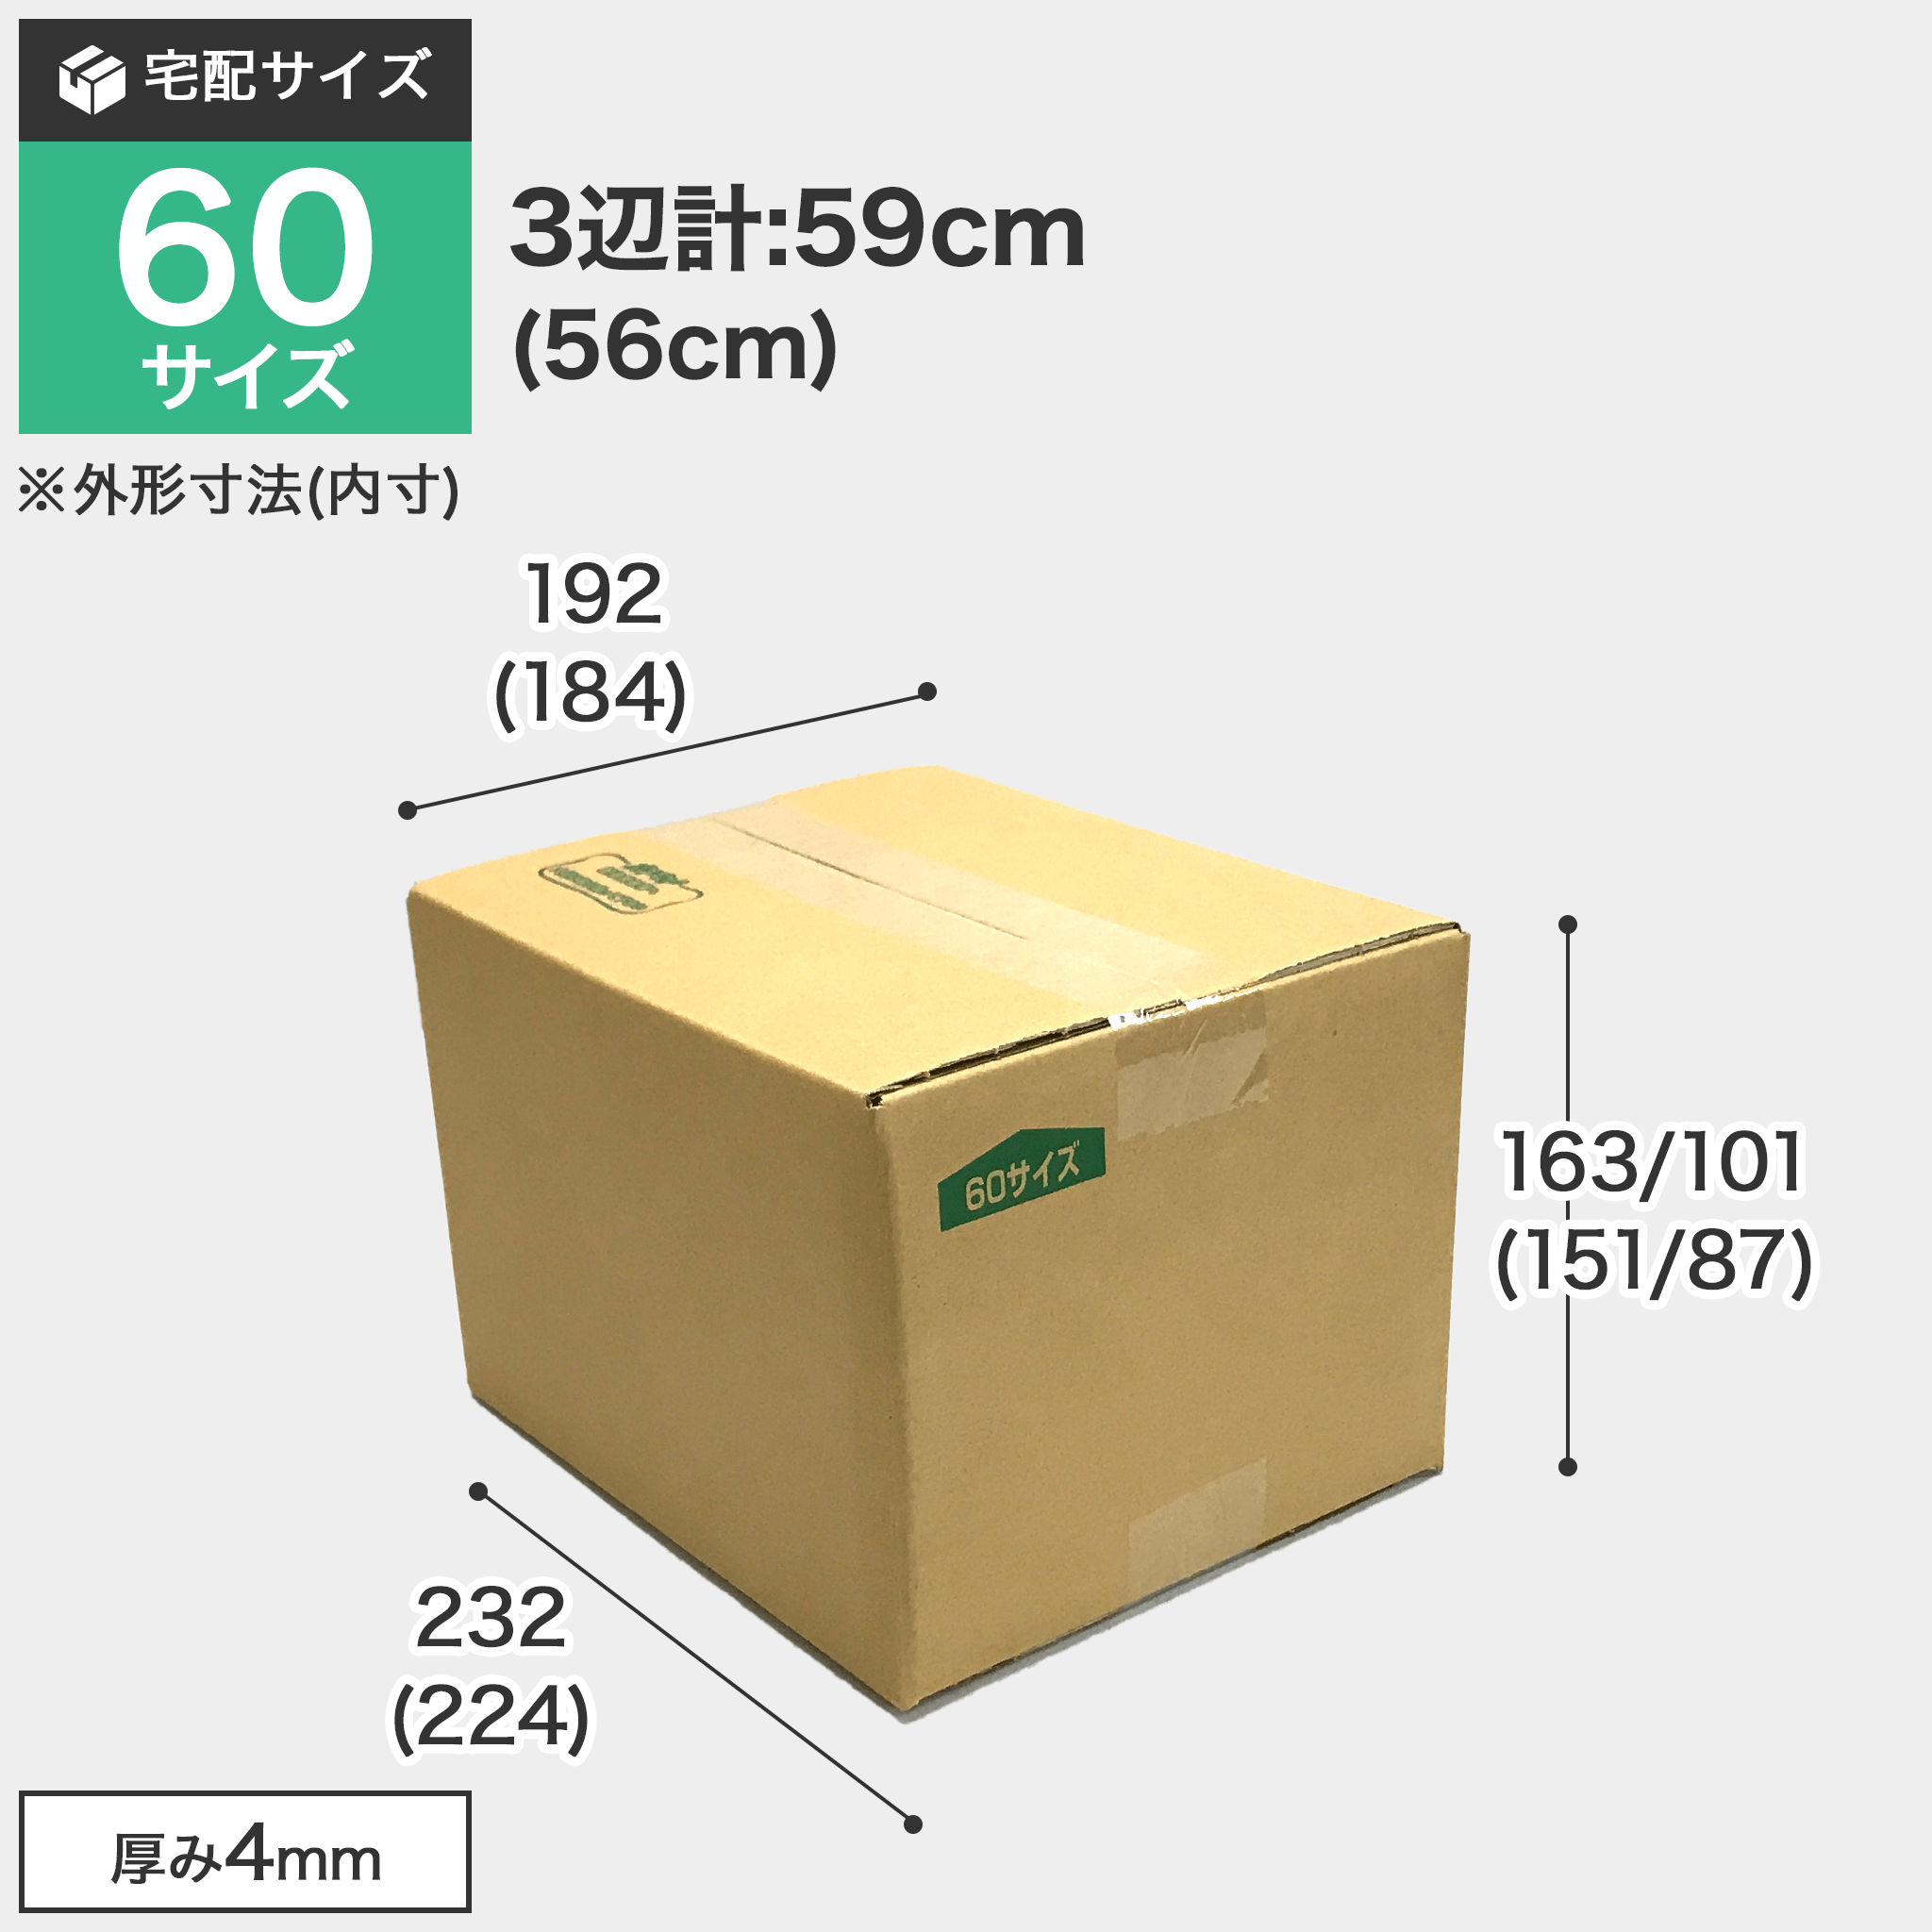 宅配60サイズのダンボール箱 3辺合計約59cm 宅配60サイズのダンボール箱ですが、罫線まで裁ち下げるとコンパクトになります。